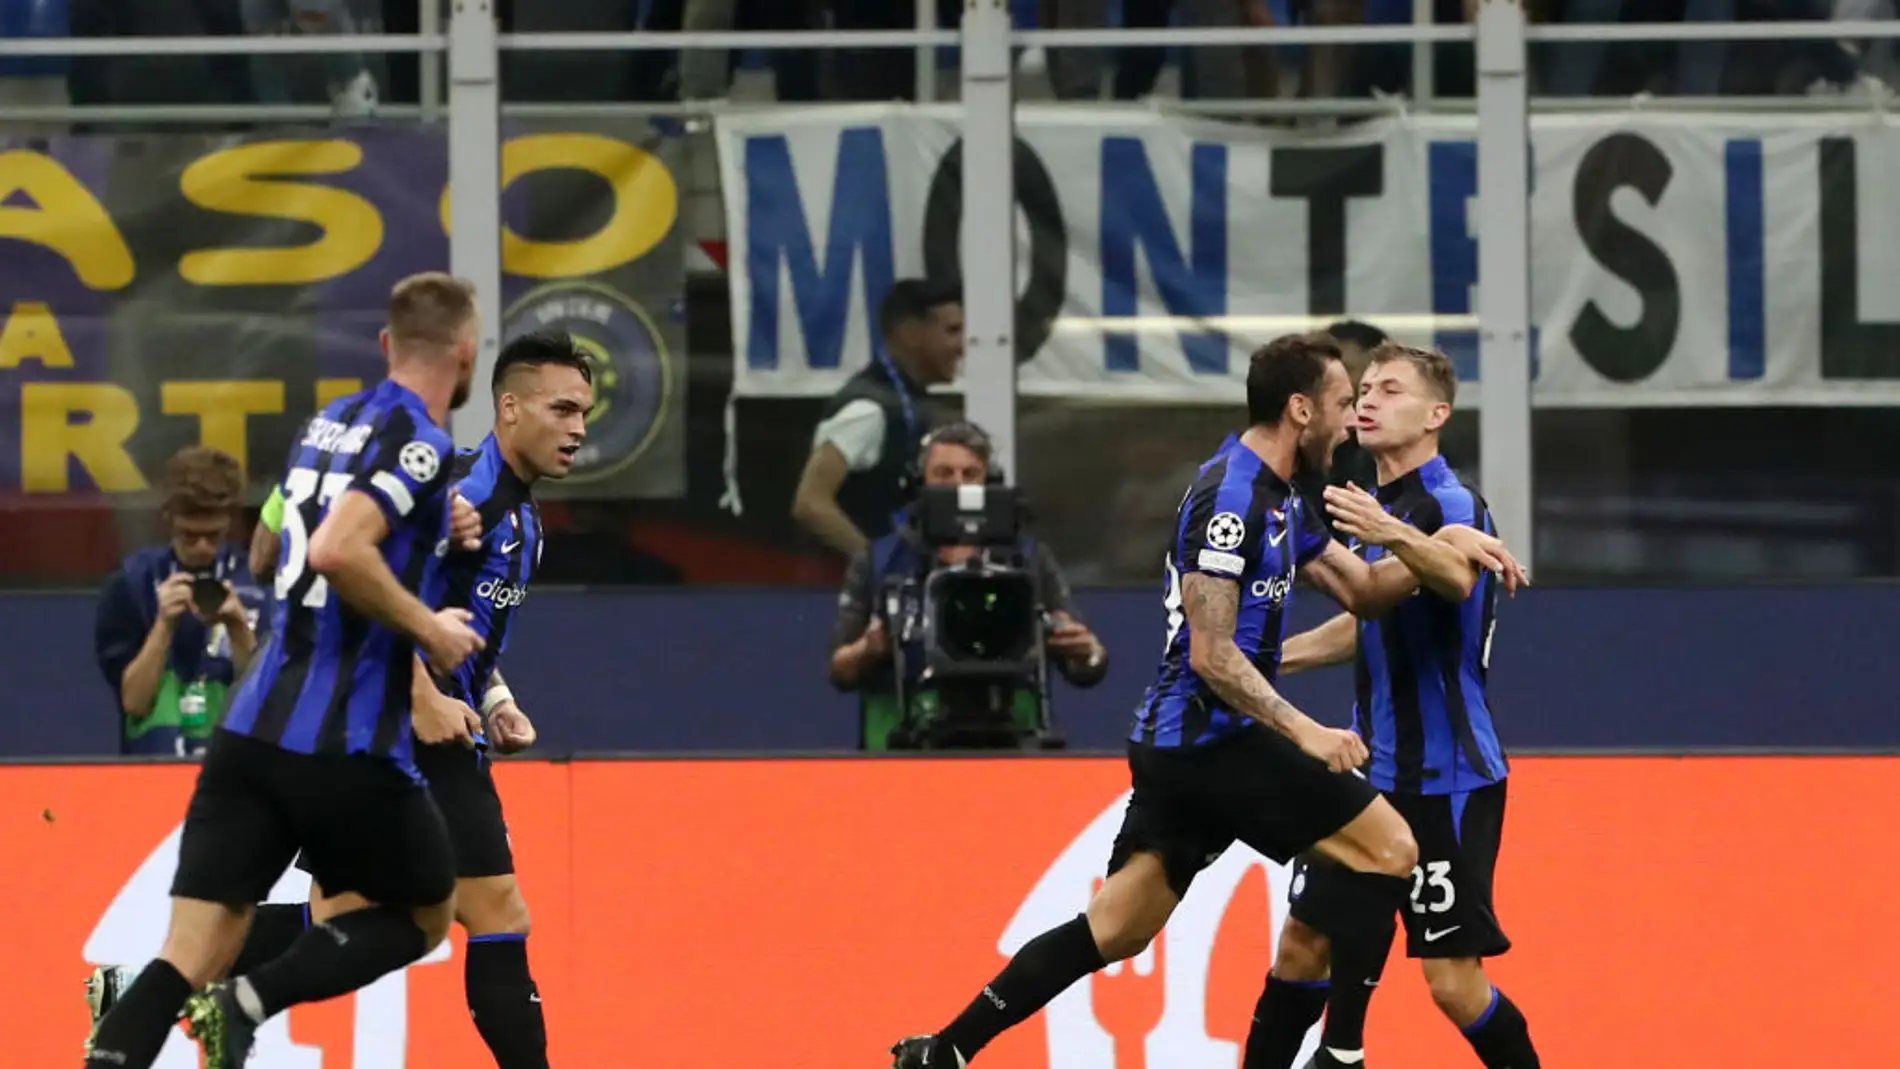 Los jugadores del Inter celebran el gol ante el FC Barcelona